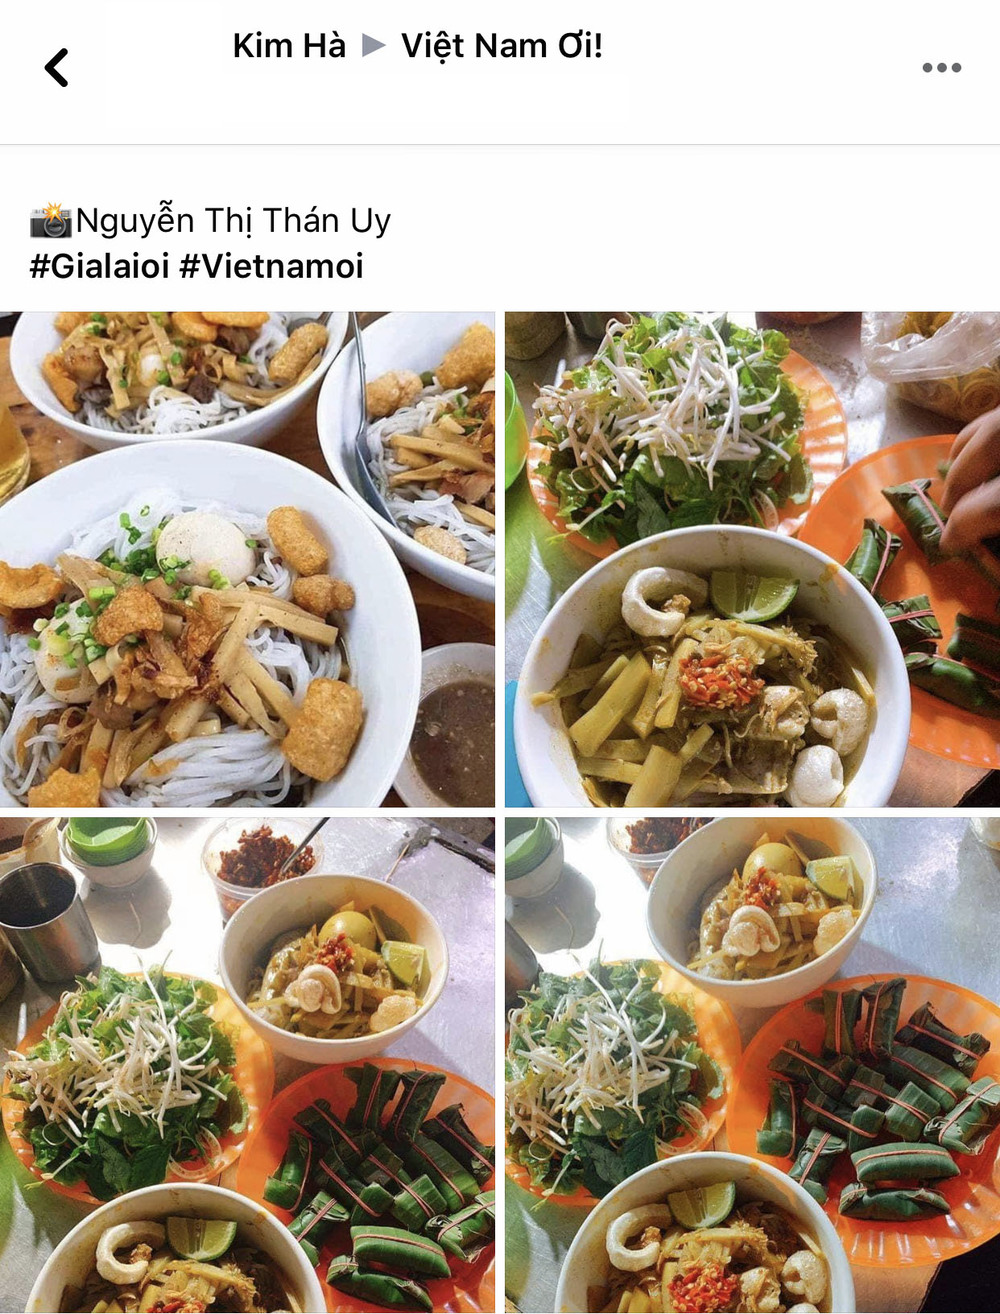  
Thành viên group Việt Nam Ơi giới thiệu món ăn đặc sản "phố núi".